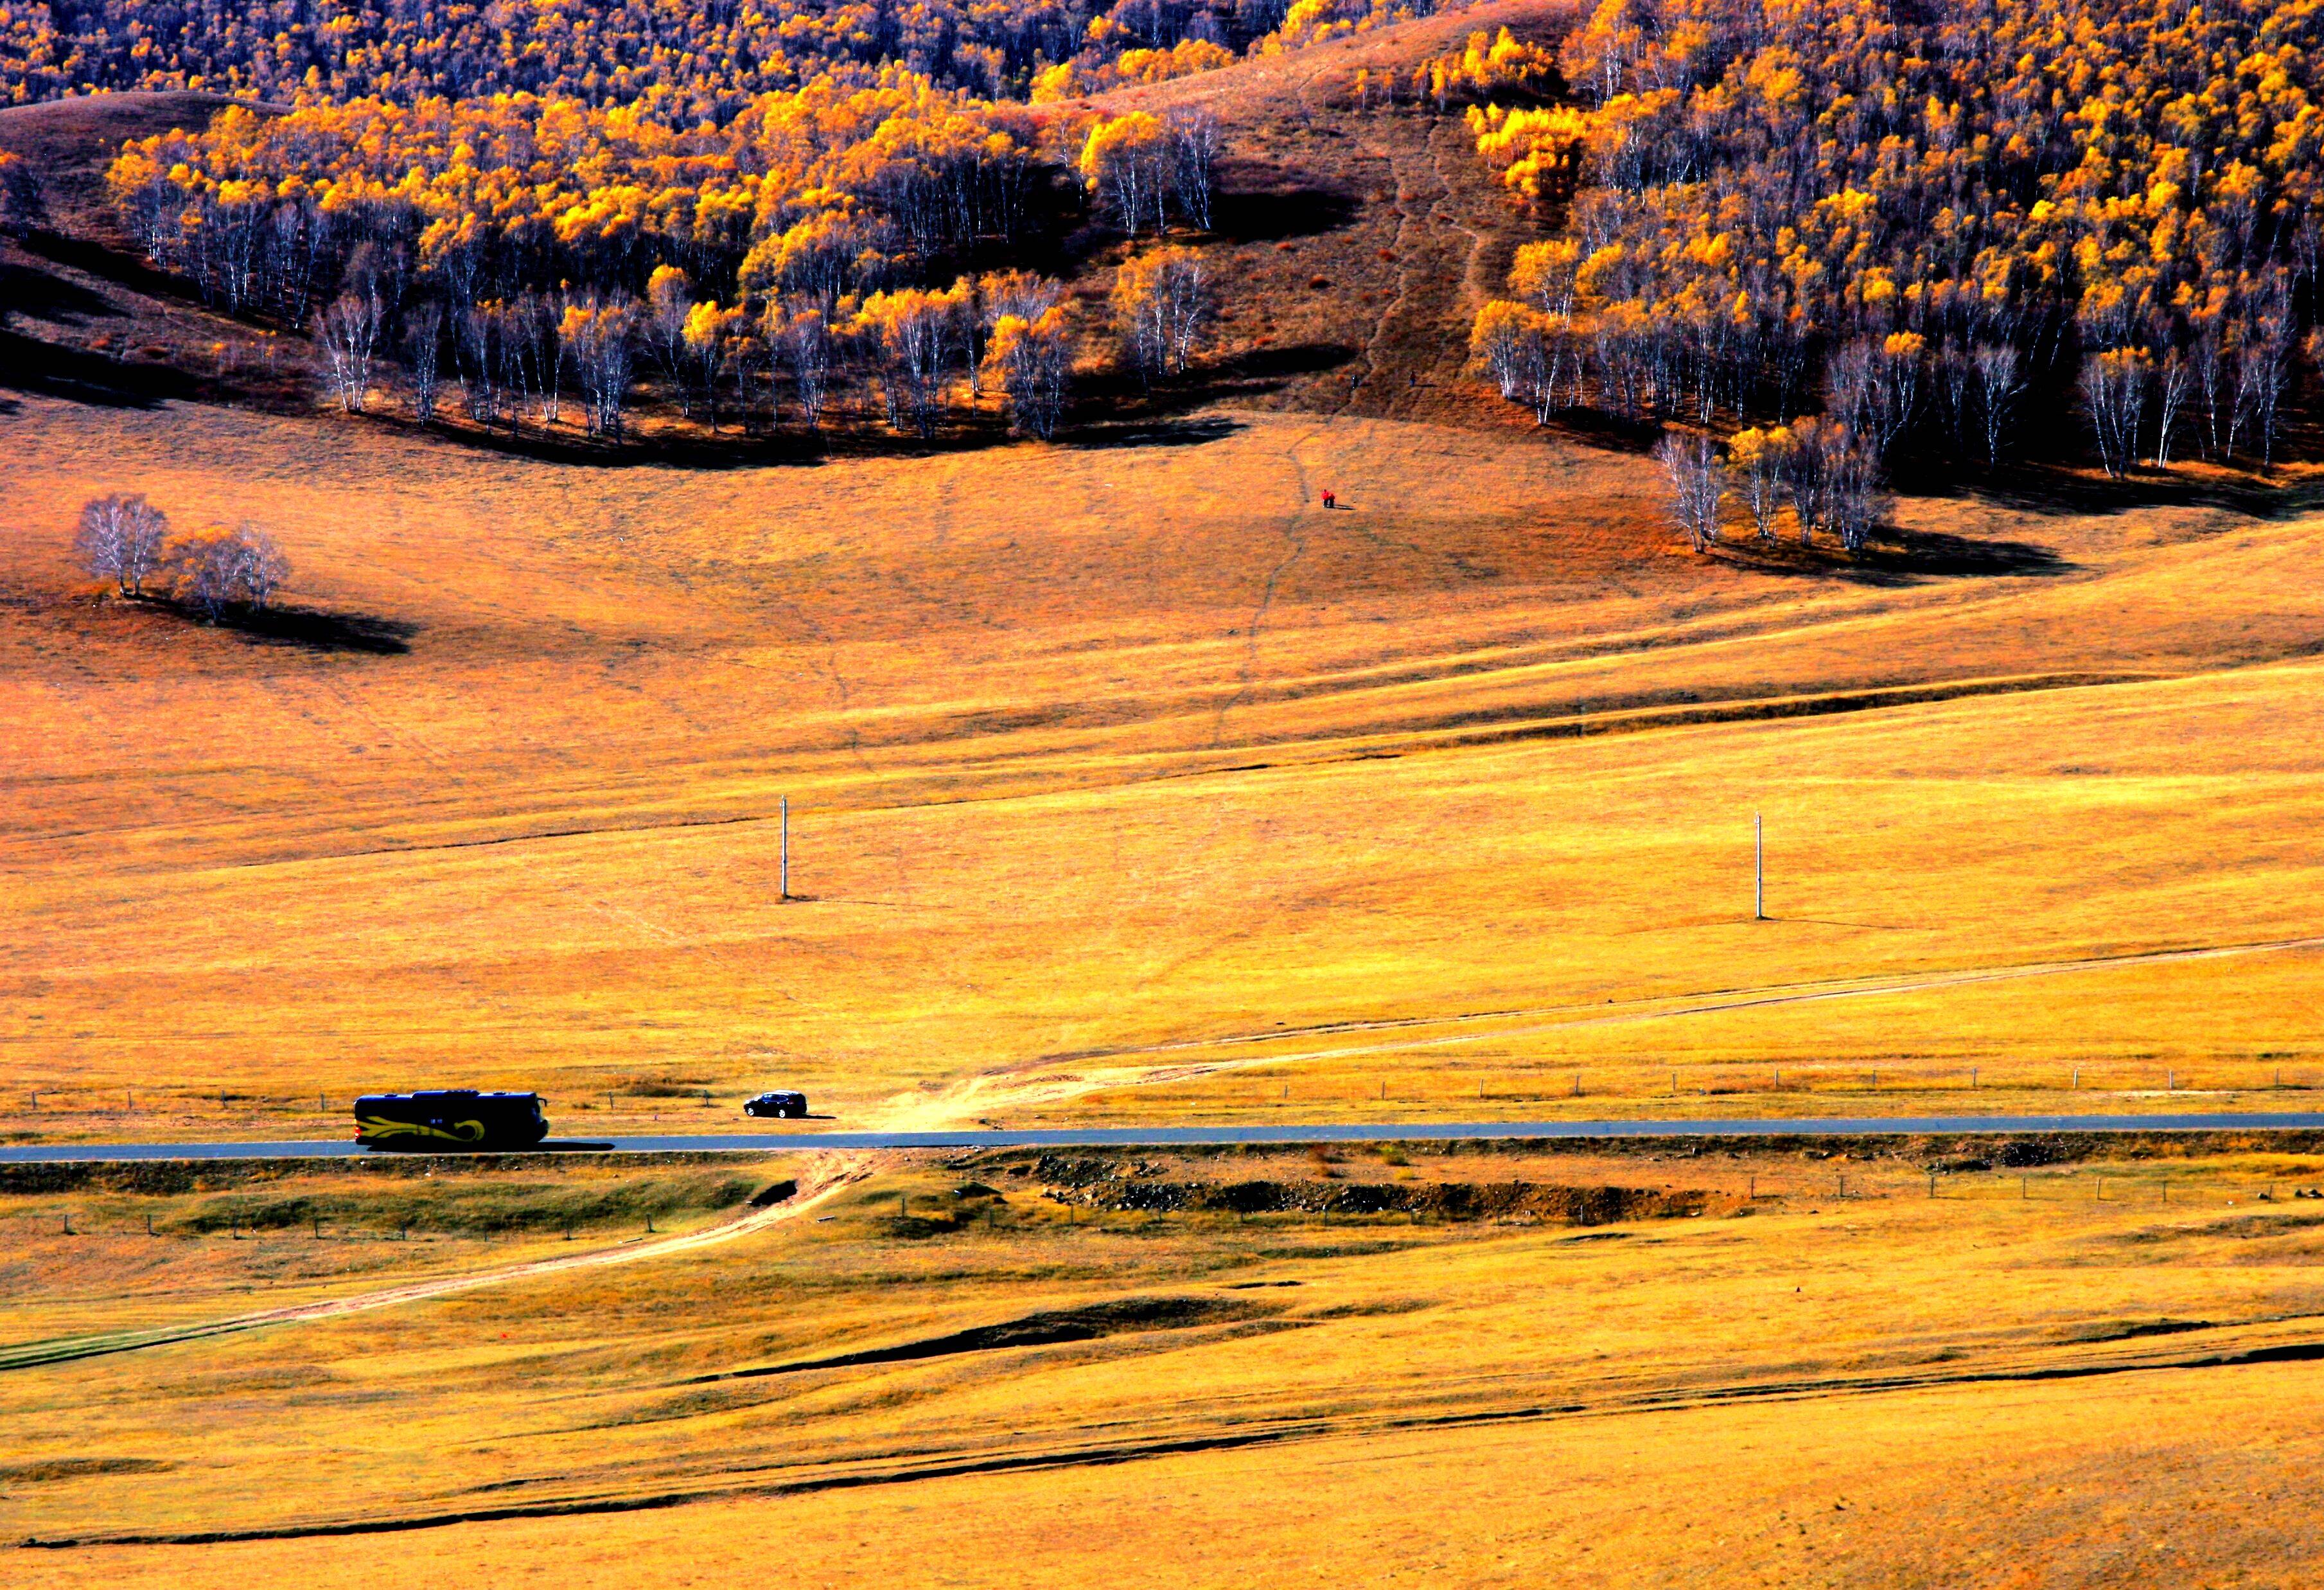 地理答啦:内蒙古乌兰布统大草原,秋天的景色天高地阔